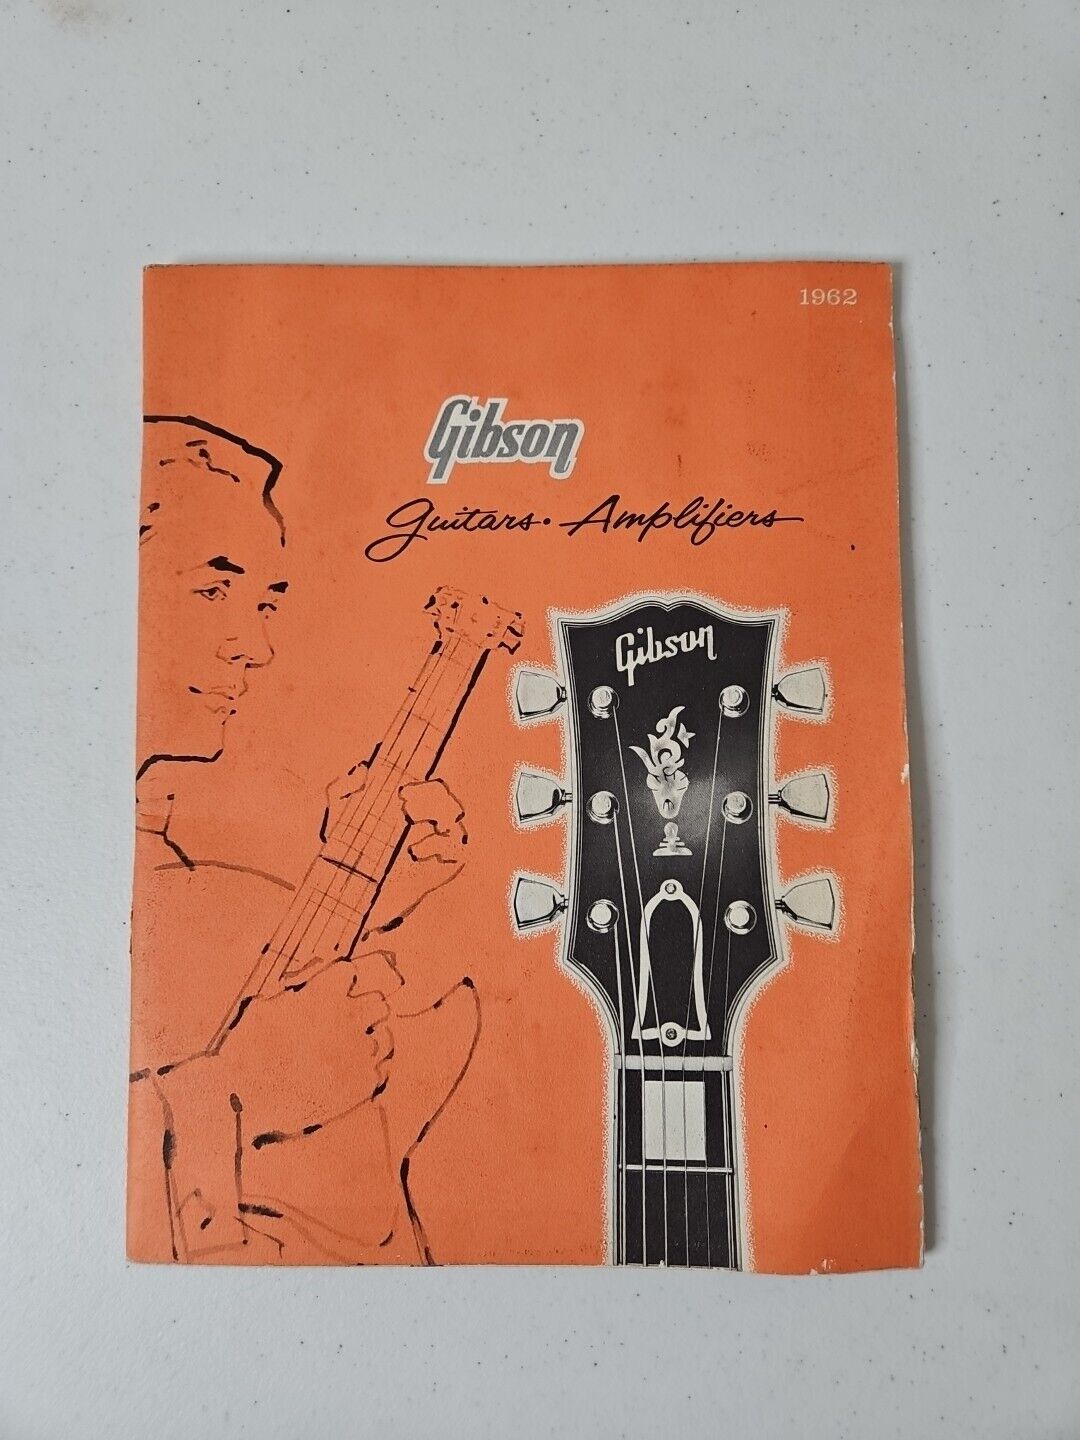 Vintage - Rare - 1962 Gibson Guitar & Amplifier Catalog 